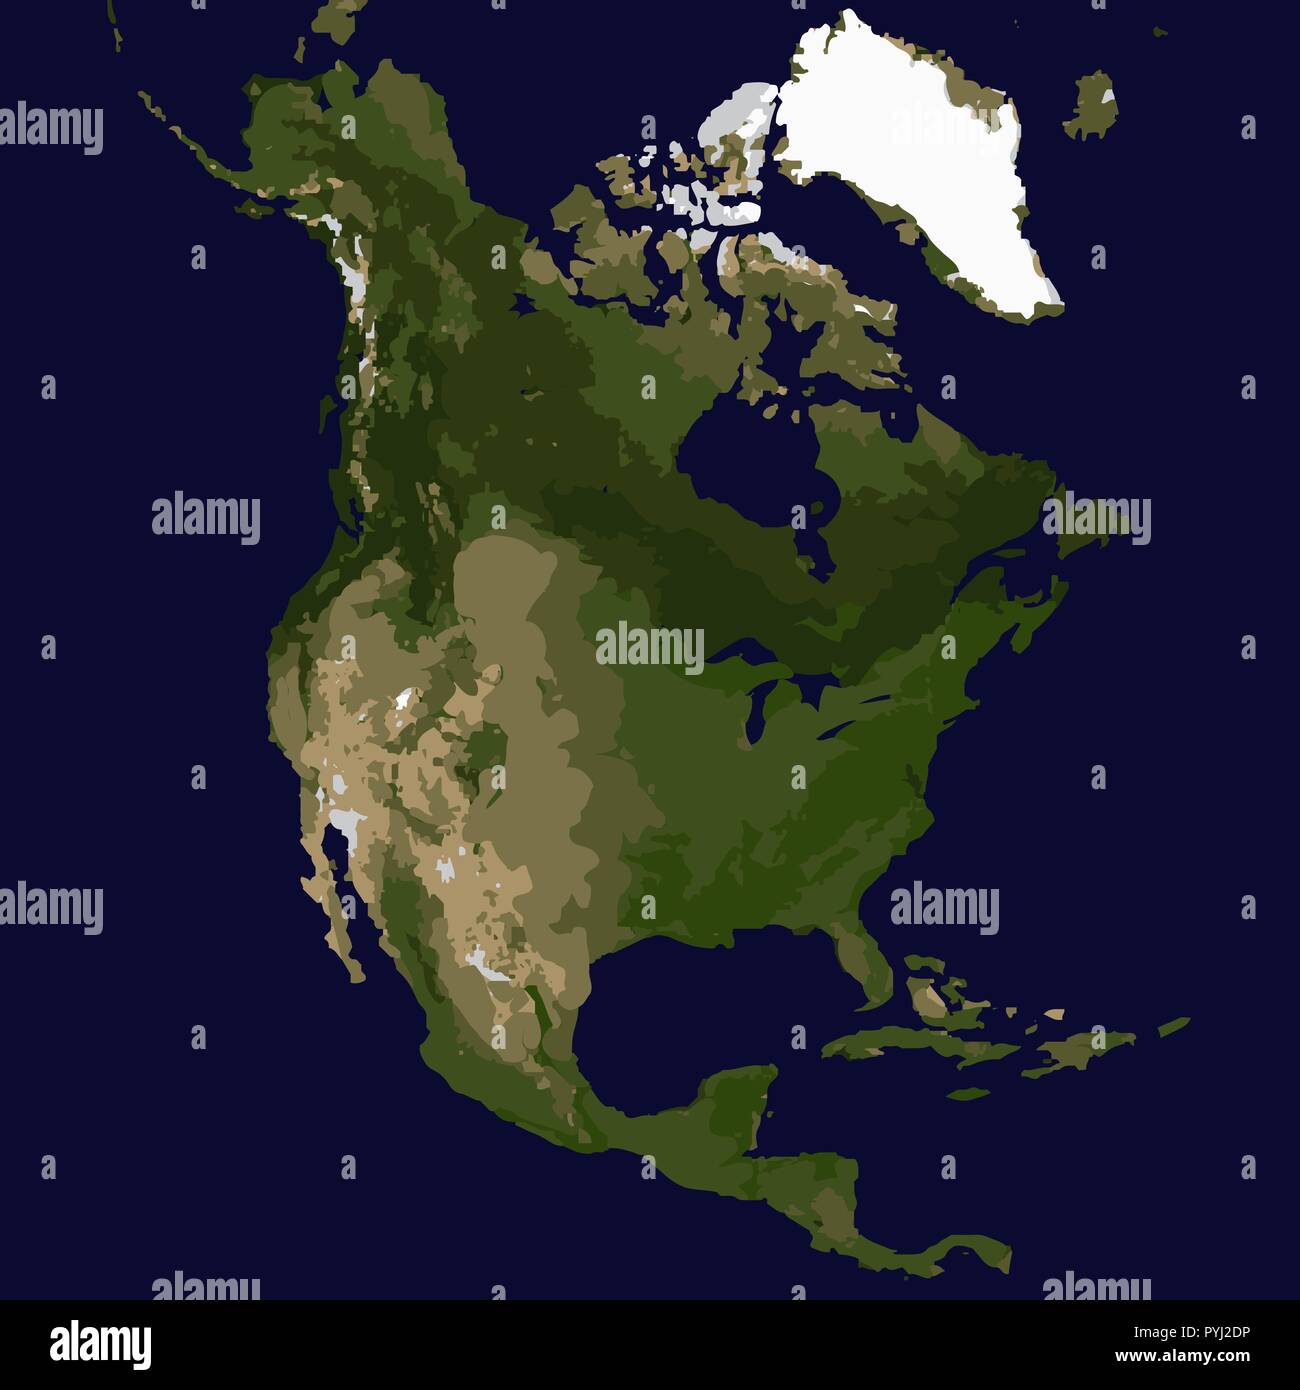 Satellite View North America Country Immagini e Fotos Stock - Alamy